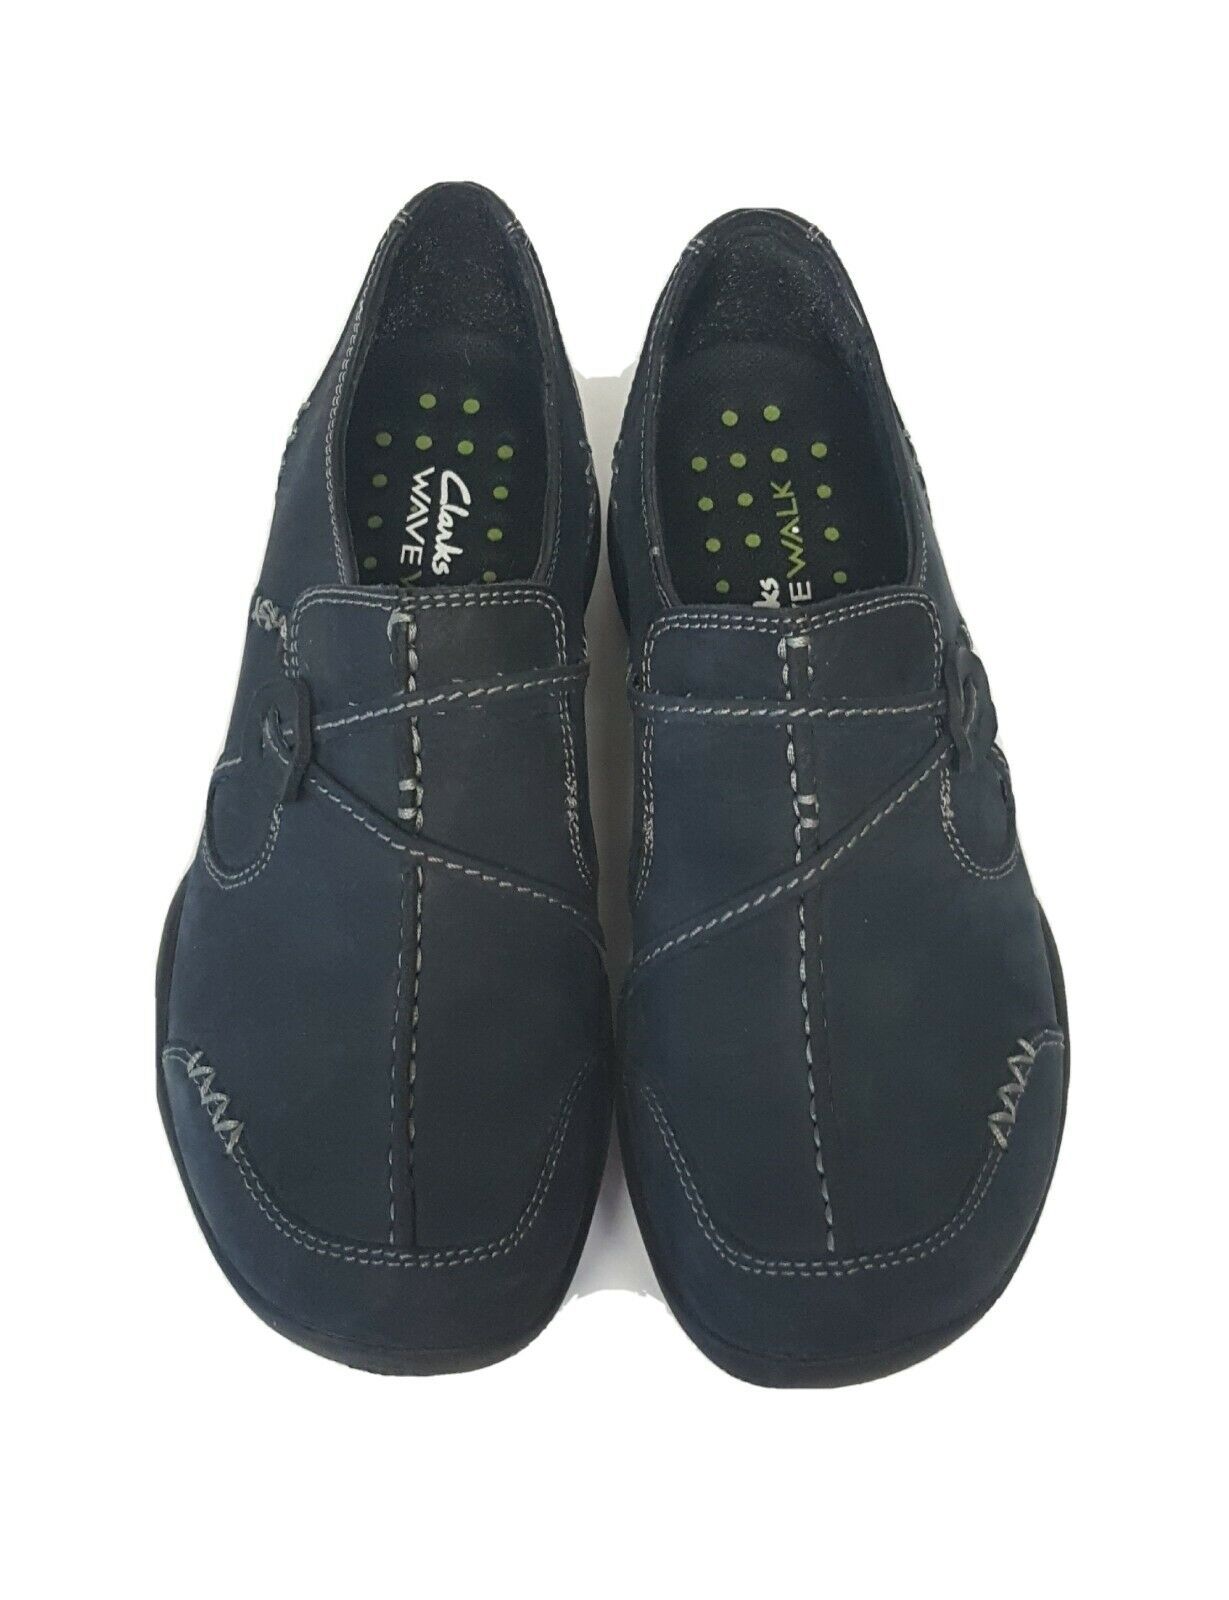 Clark's Wavewalk Women's Blue Suede sz 5M 87576 - Athletic Shoes